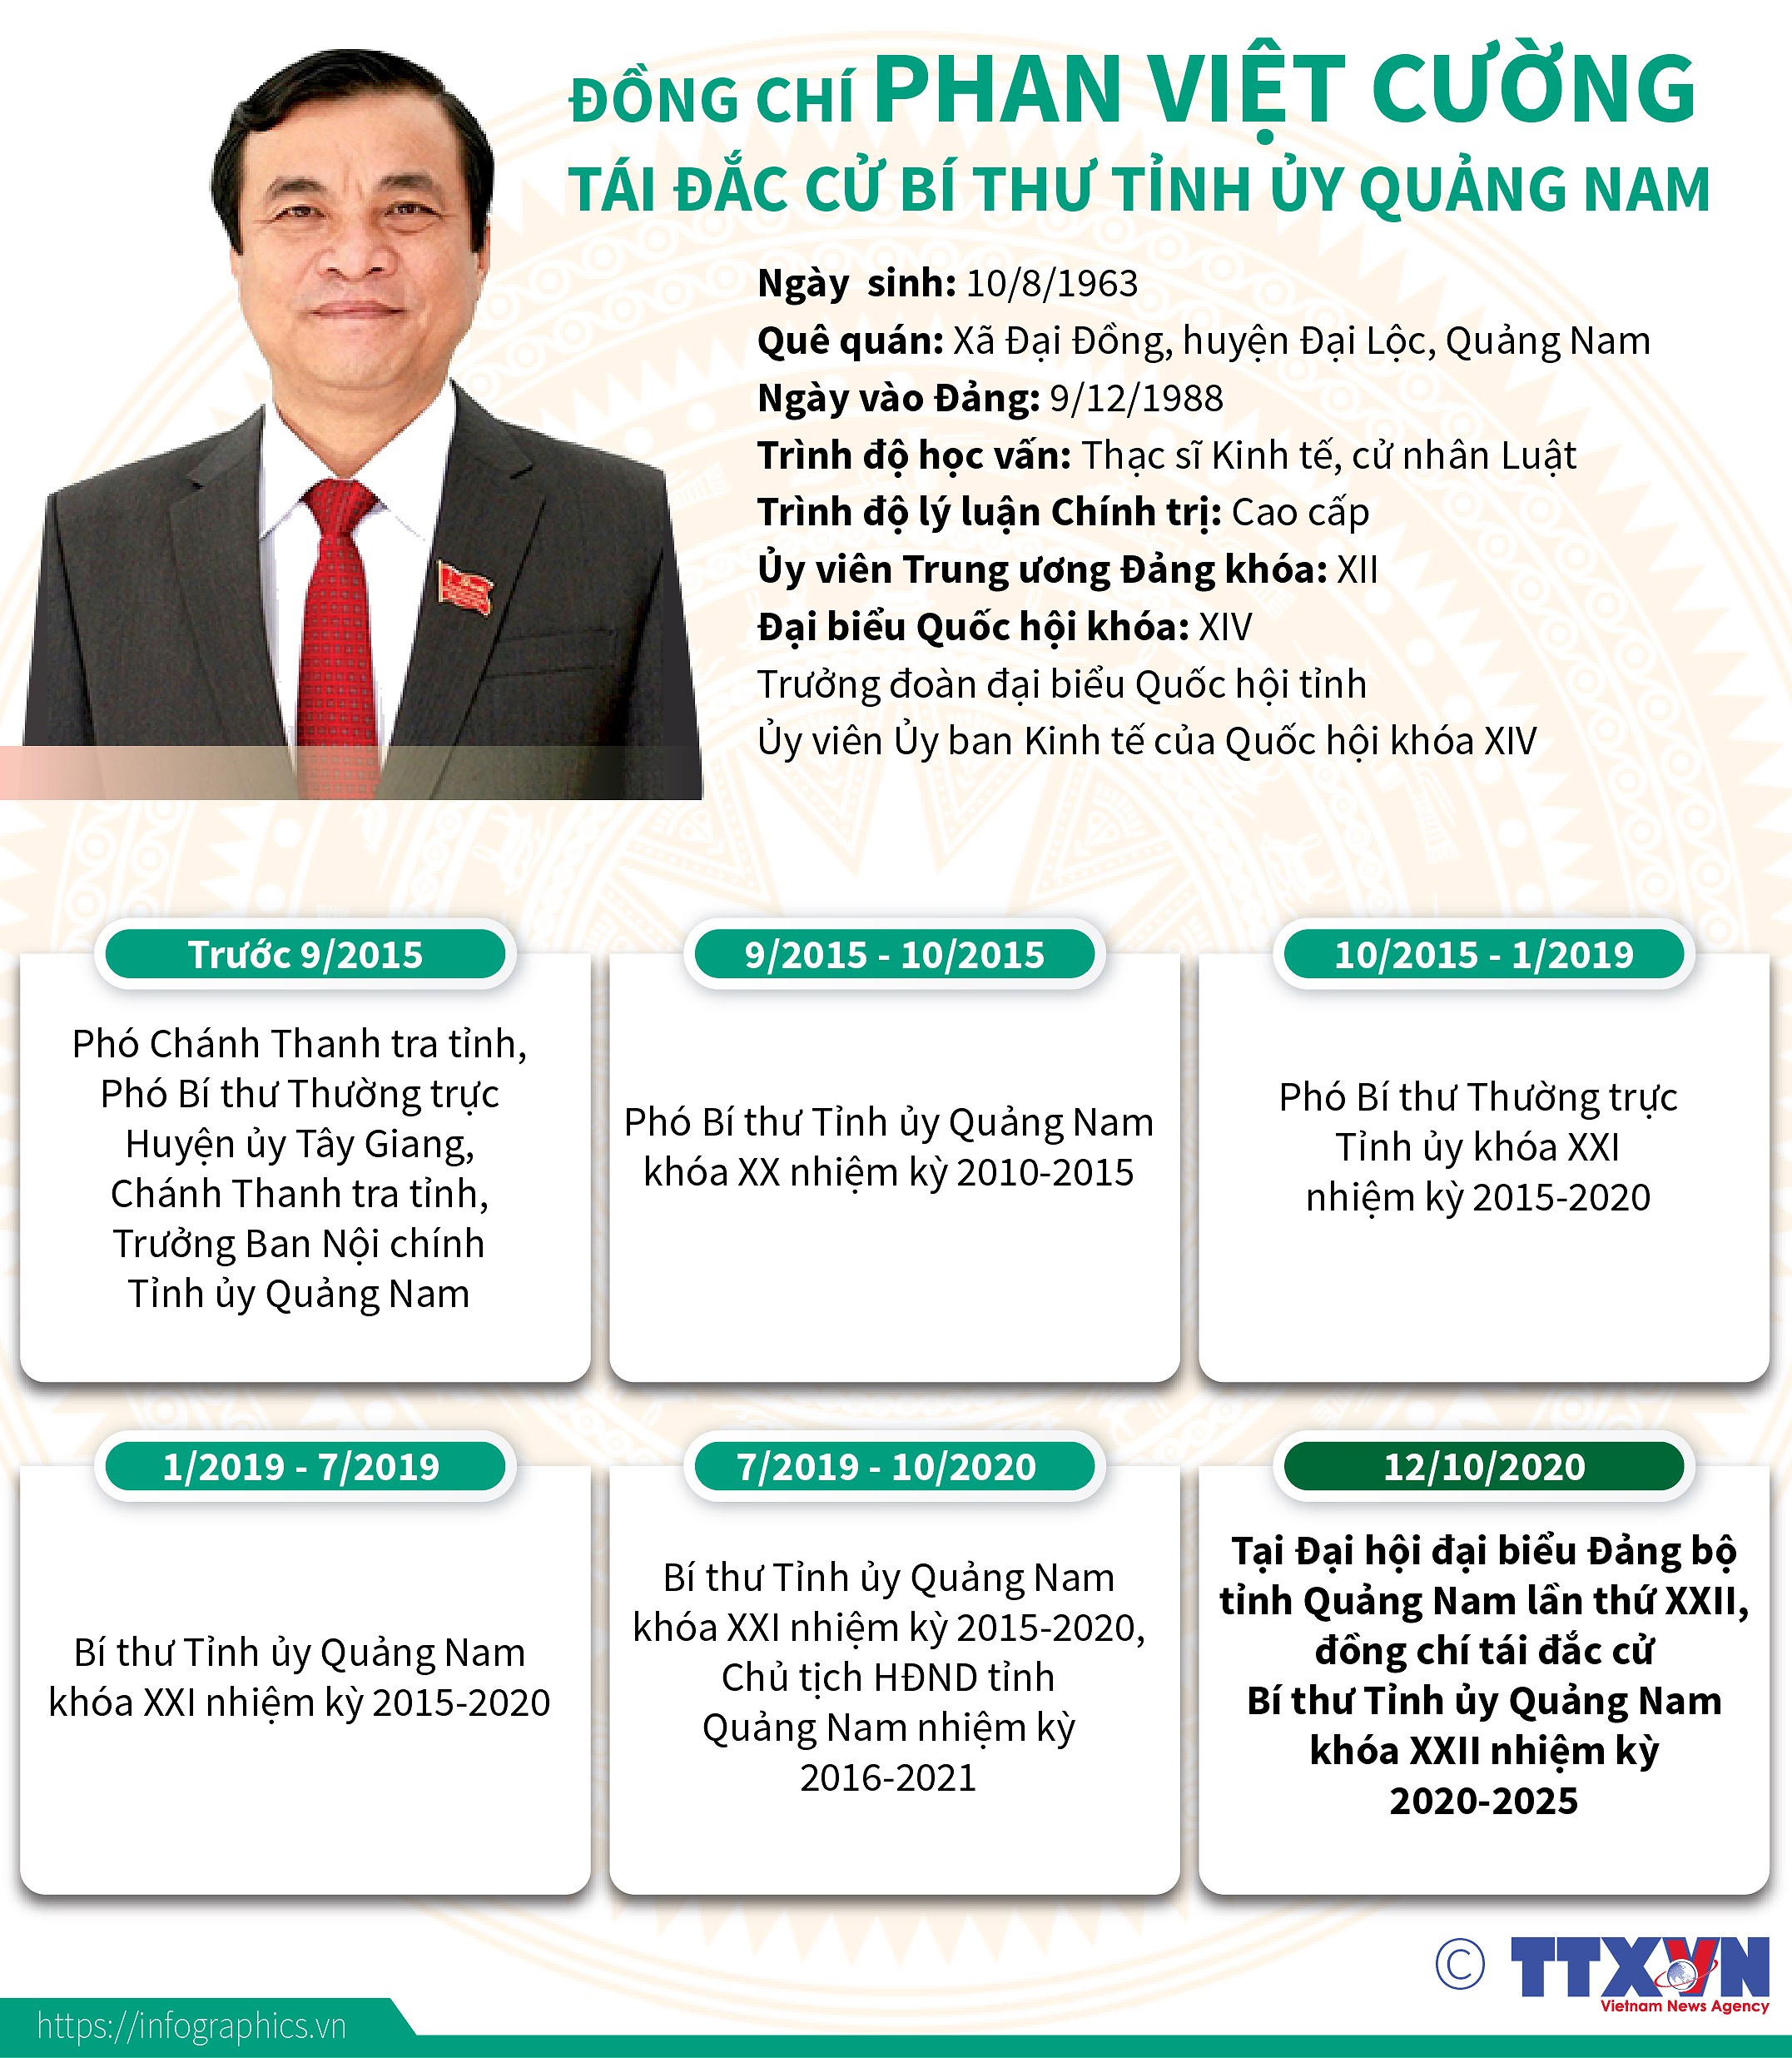 [Infographics] Ong Phan Viet Cuong tai dac cu Bi thu Tinh uy Quang Nam hinh anh 1